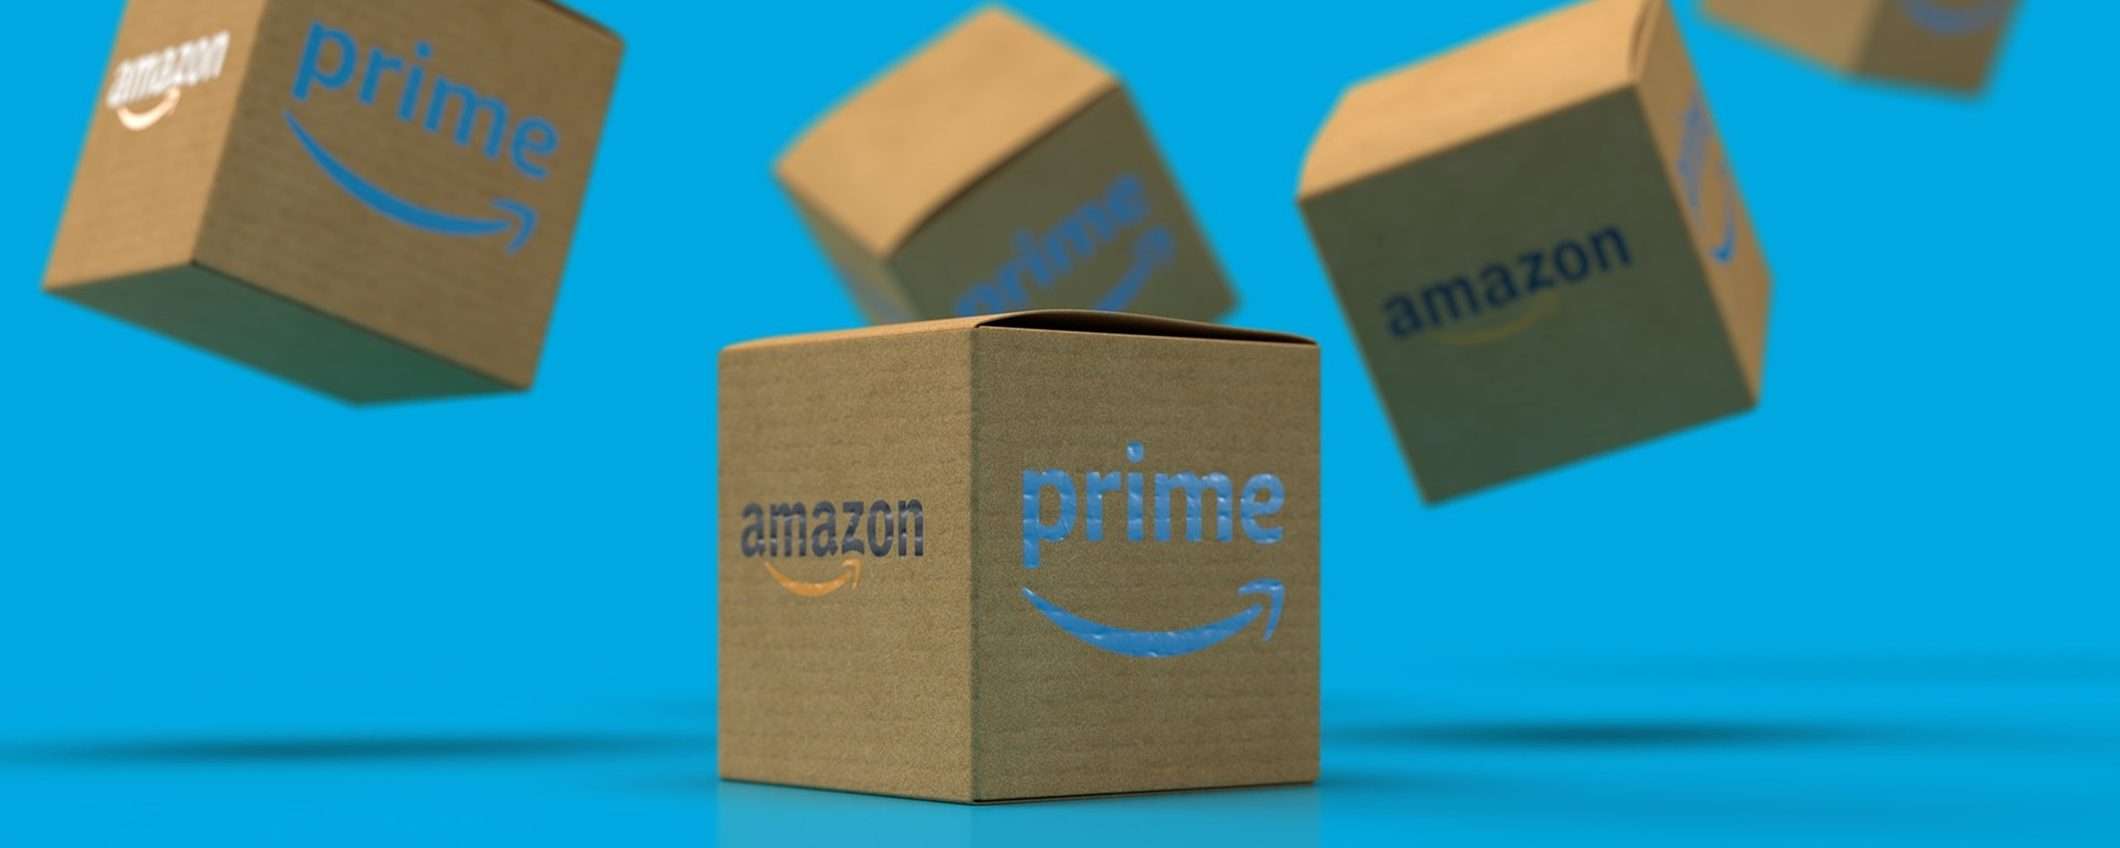 Recensioni Amazon riassunte dall'AI sono affidabili?